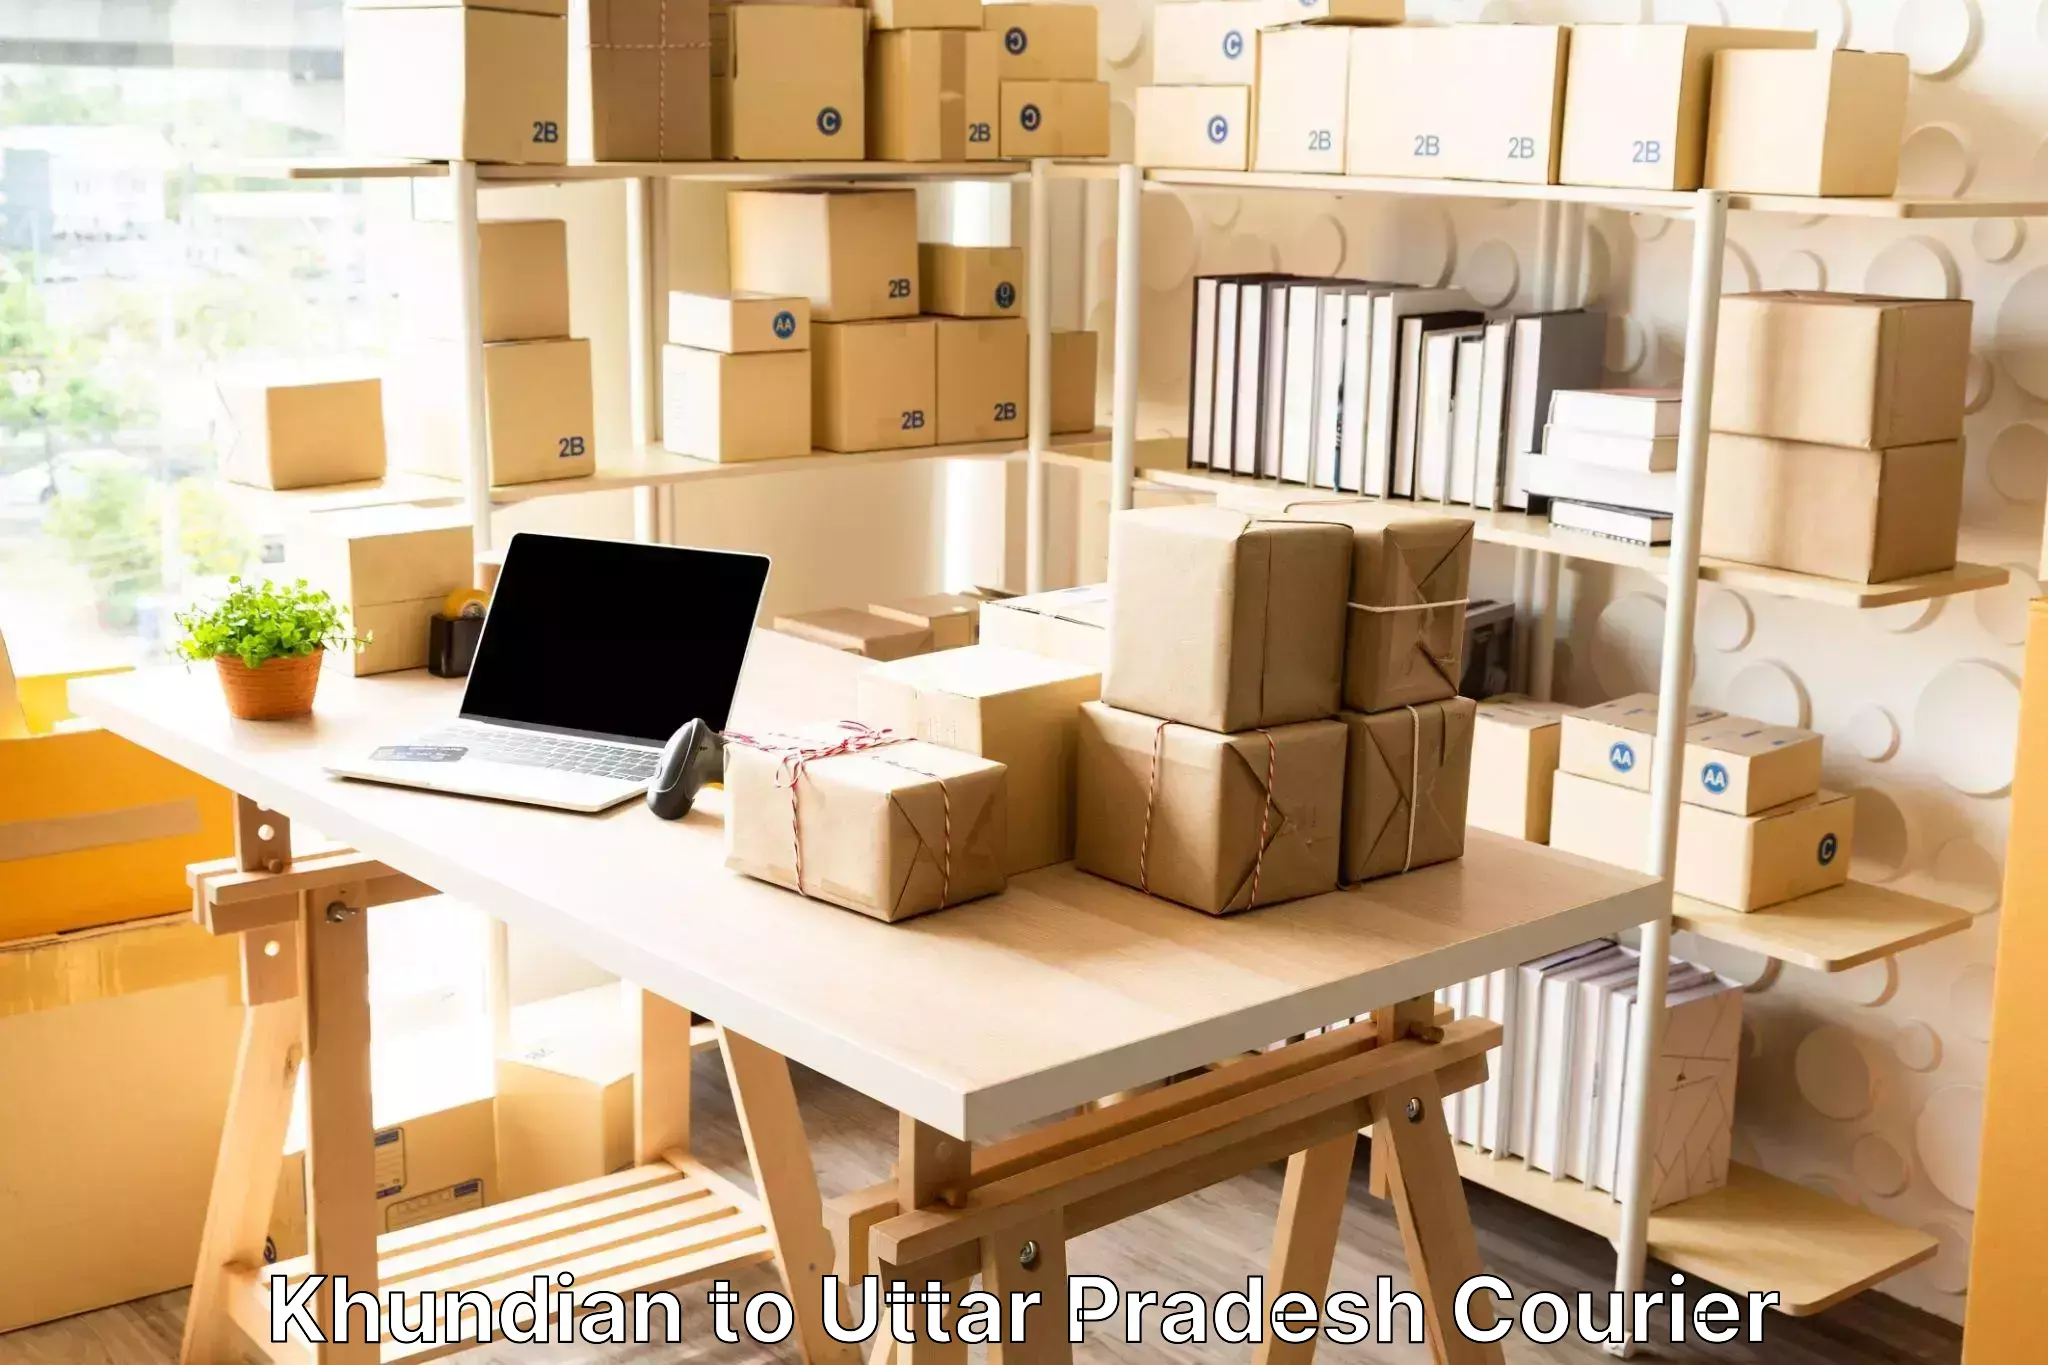 Luggage delivery optimization Khundian to Uttar Pradesh